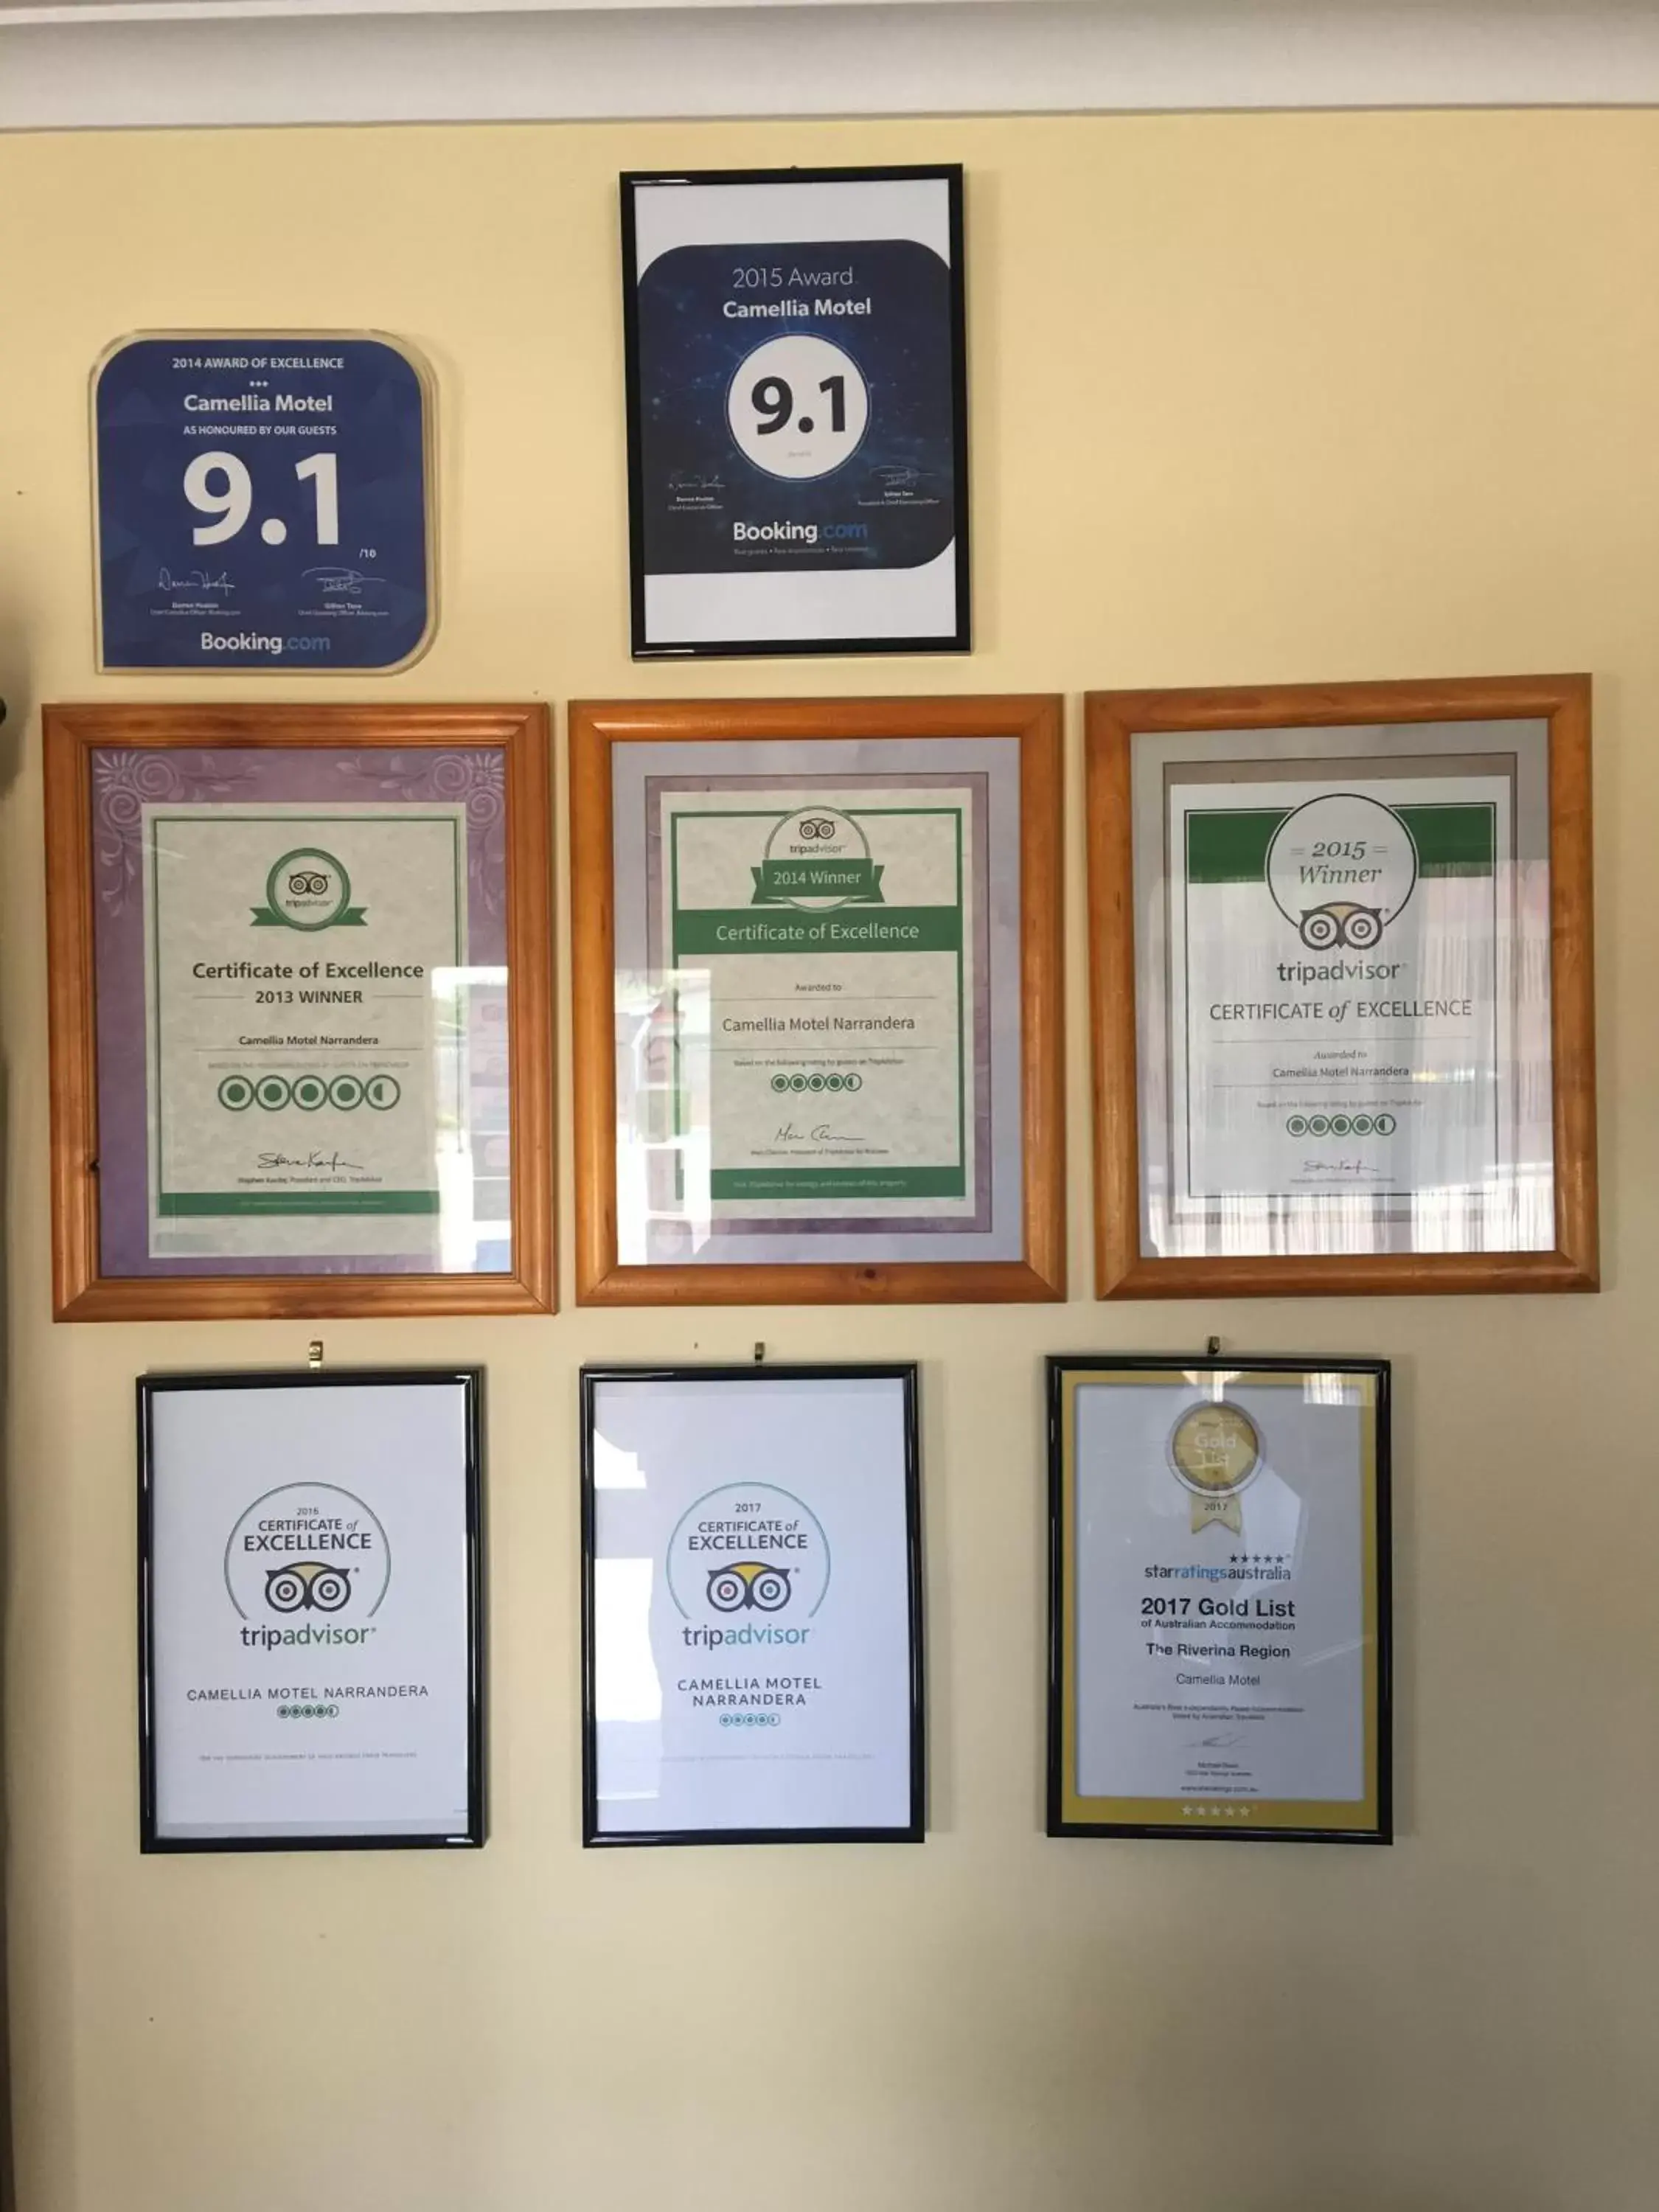 Certificate/Award in Camellia Motel